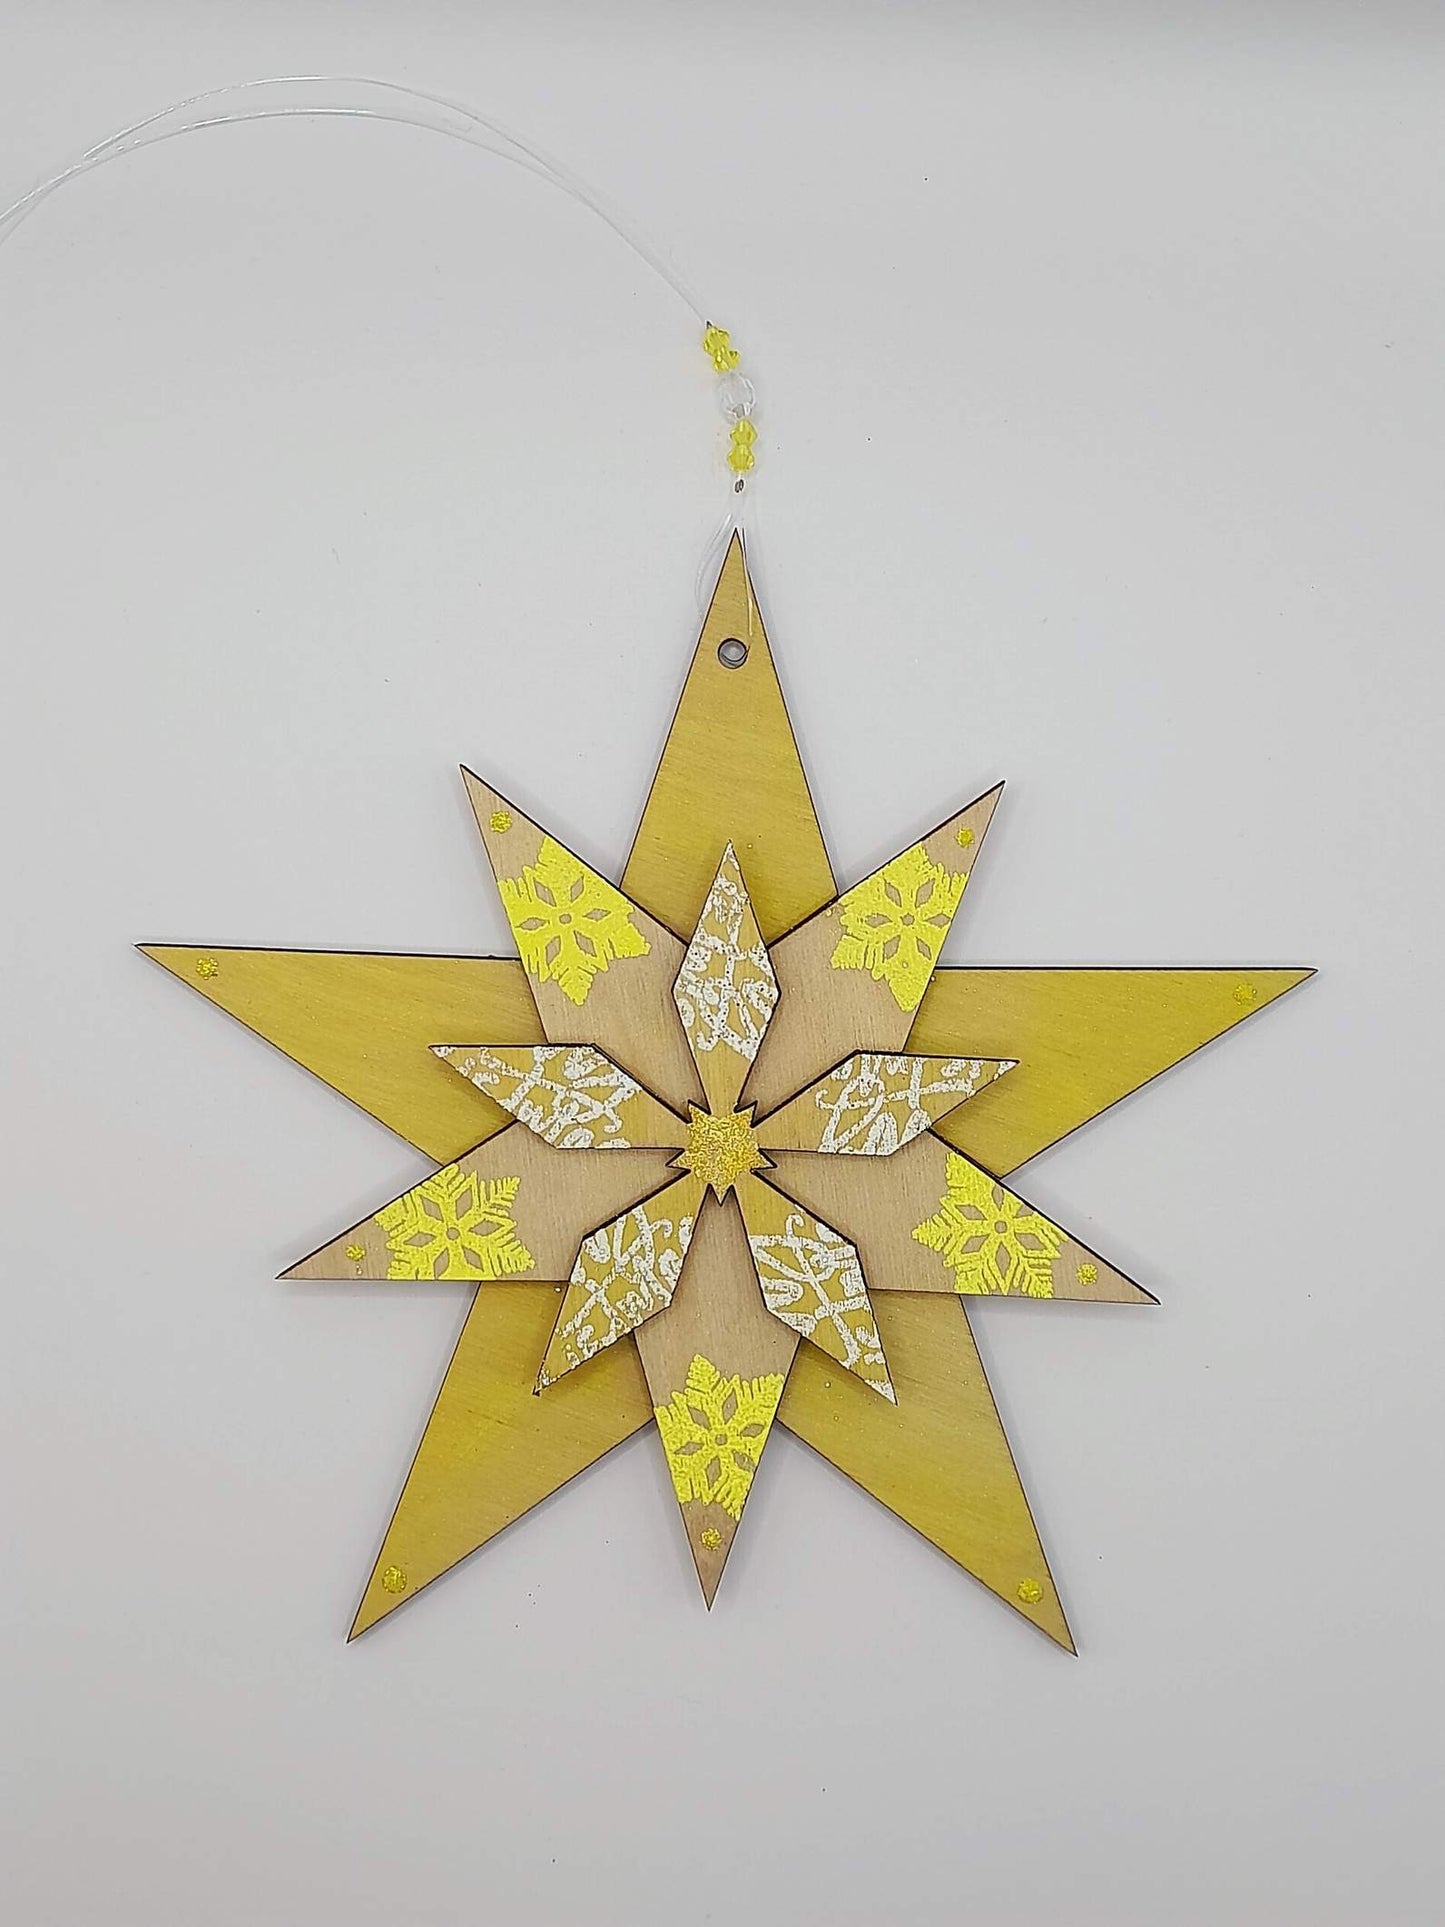 Hand made wooden star - lemon drop